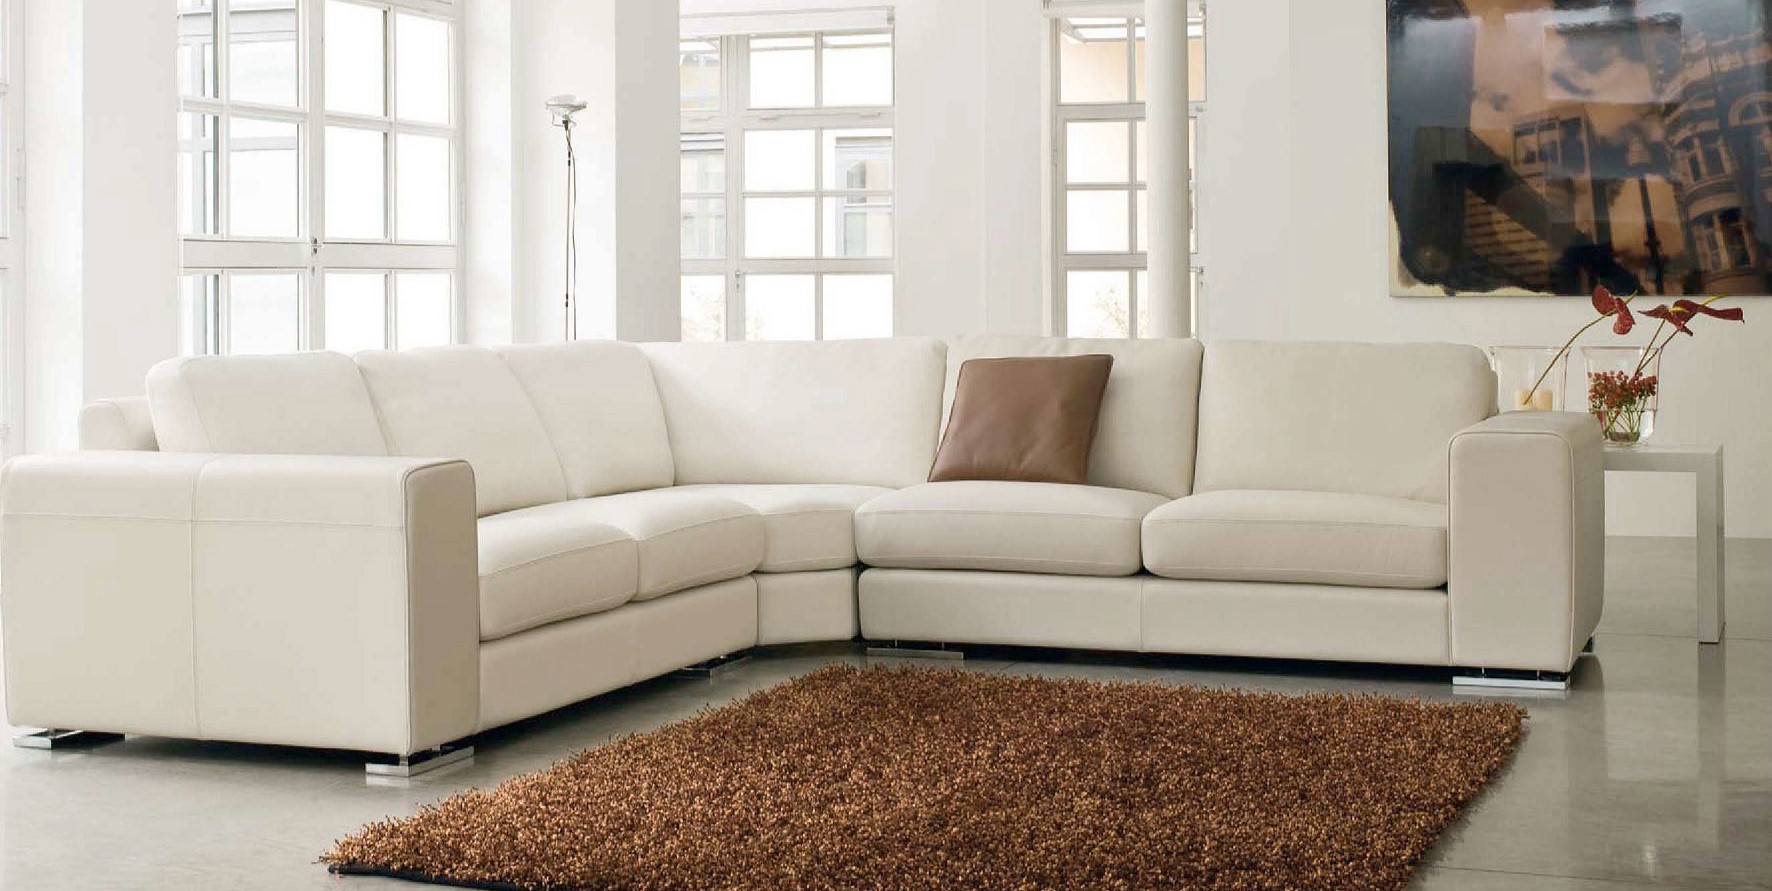 Обивку дивана можно подобрать под цвет стен в гостиной